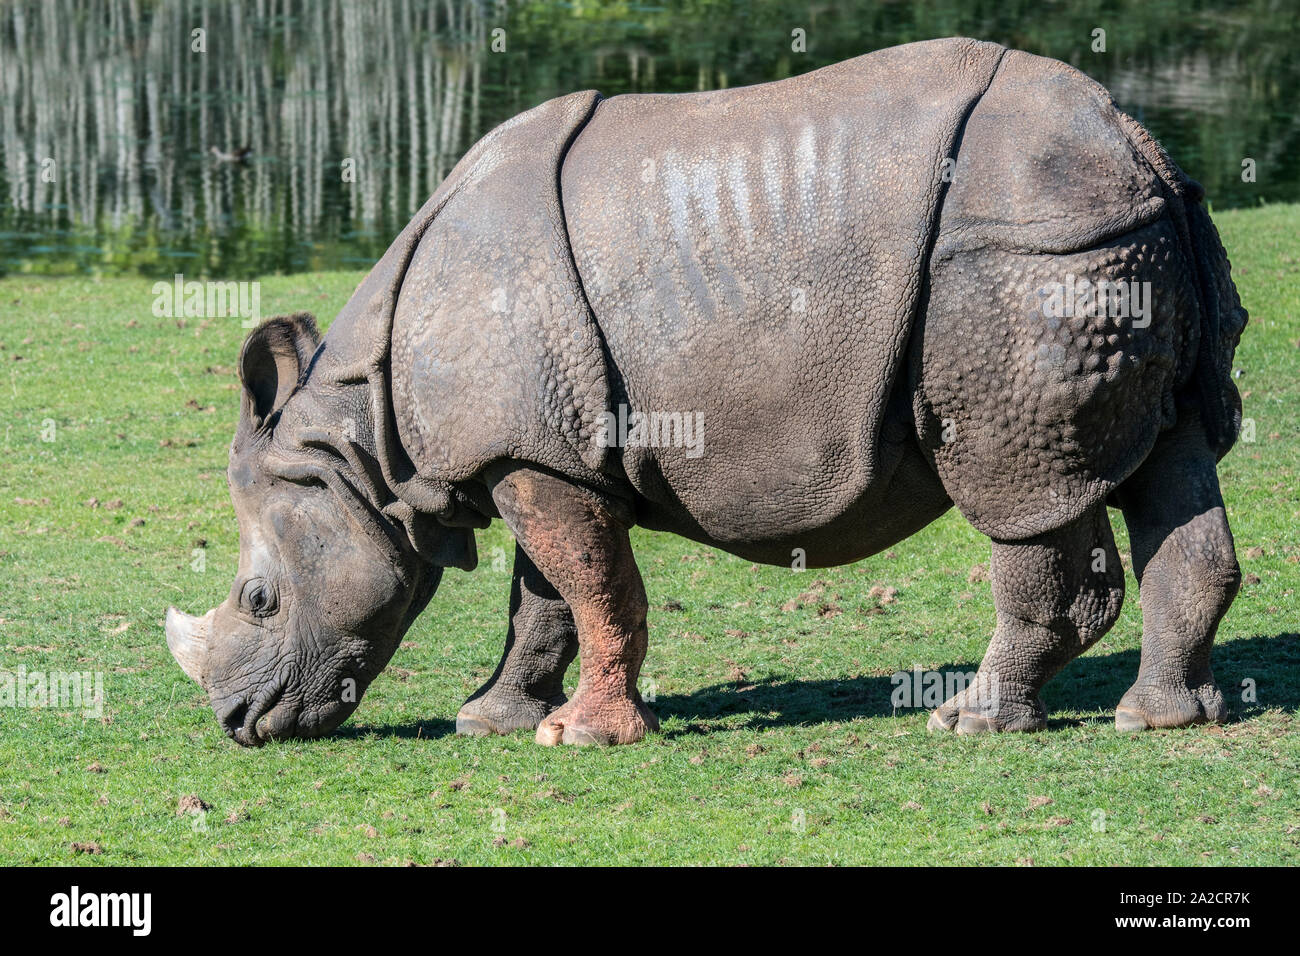 Rhinocéros indien / rhinocéros à une corne / rhinocéros unicorne de l'Inde (Rhinoceros unicornis) Banque D'Images